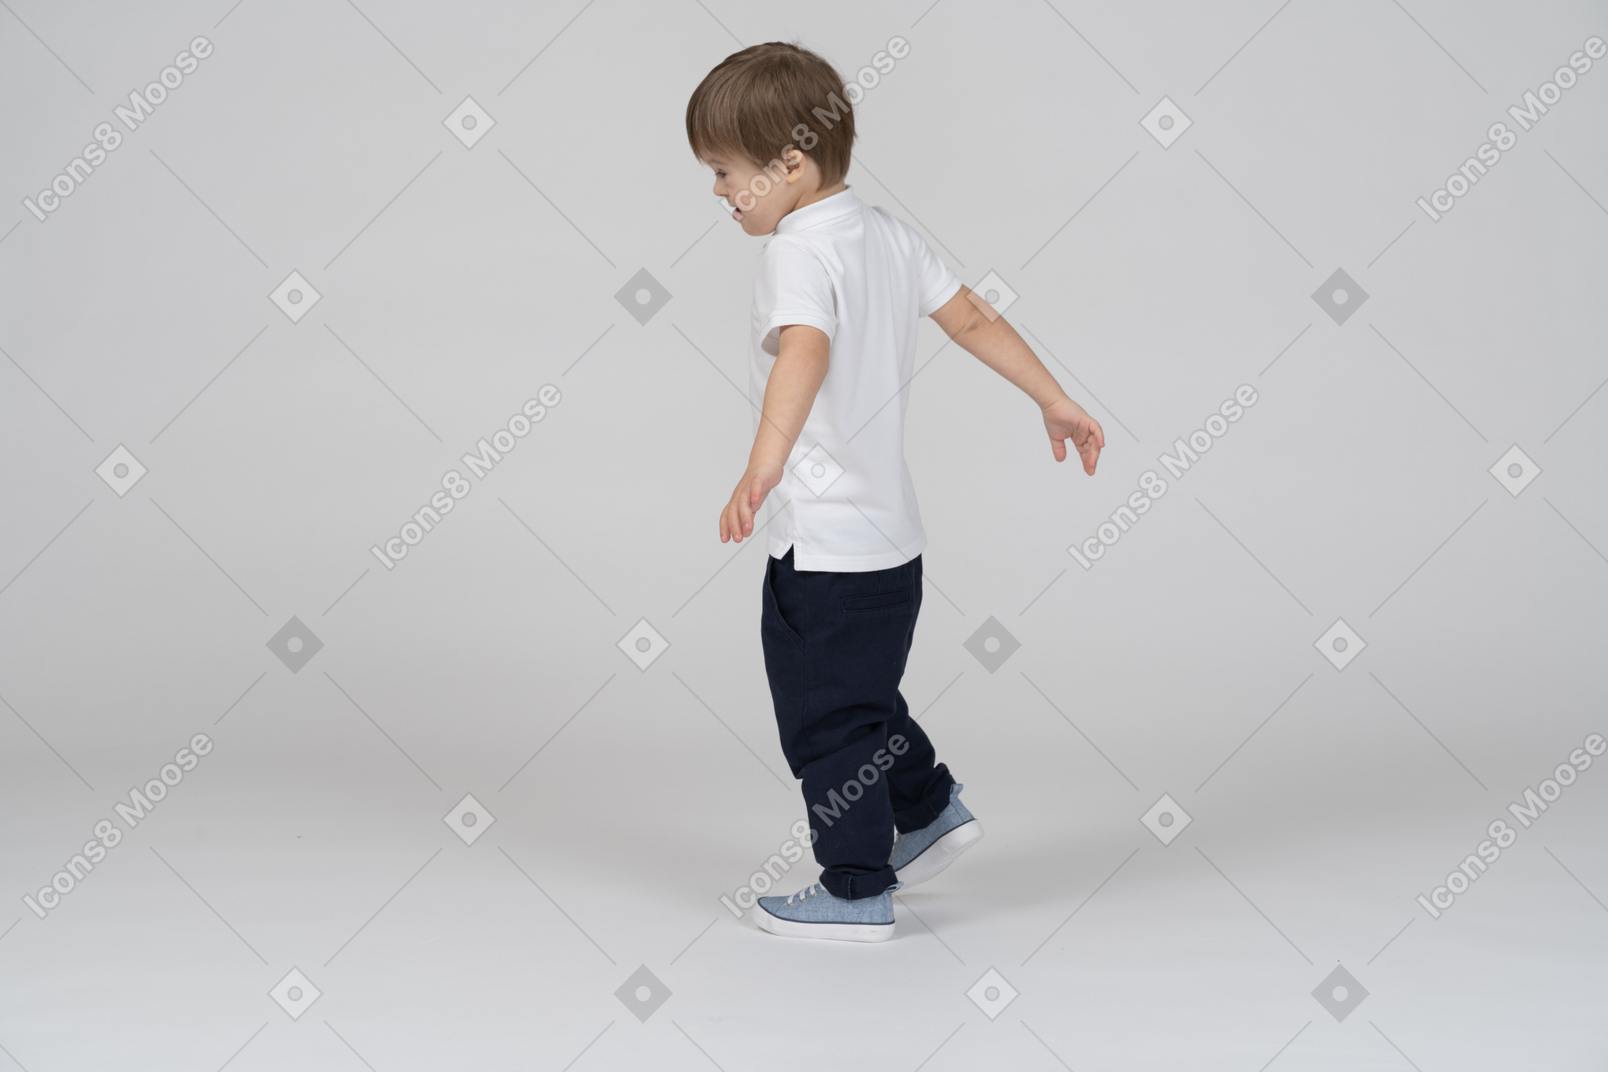 Vue de trois quarts arrière d'un garçon marchant avec des mains agitées